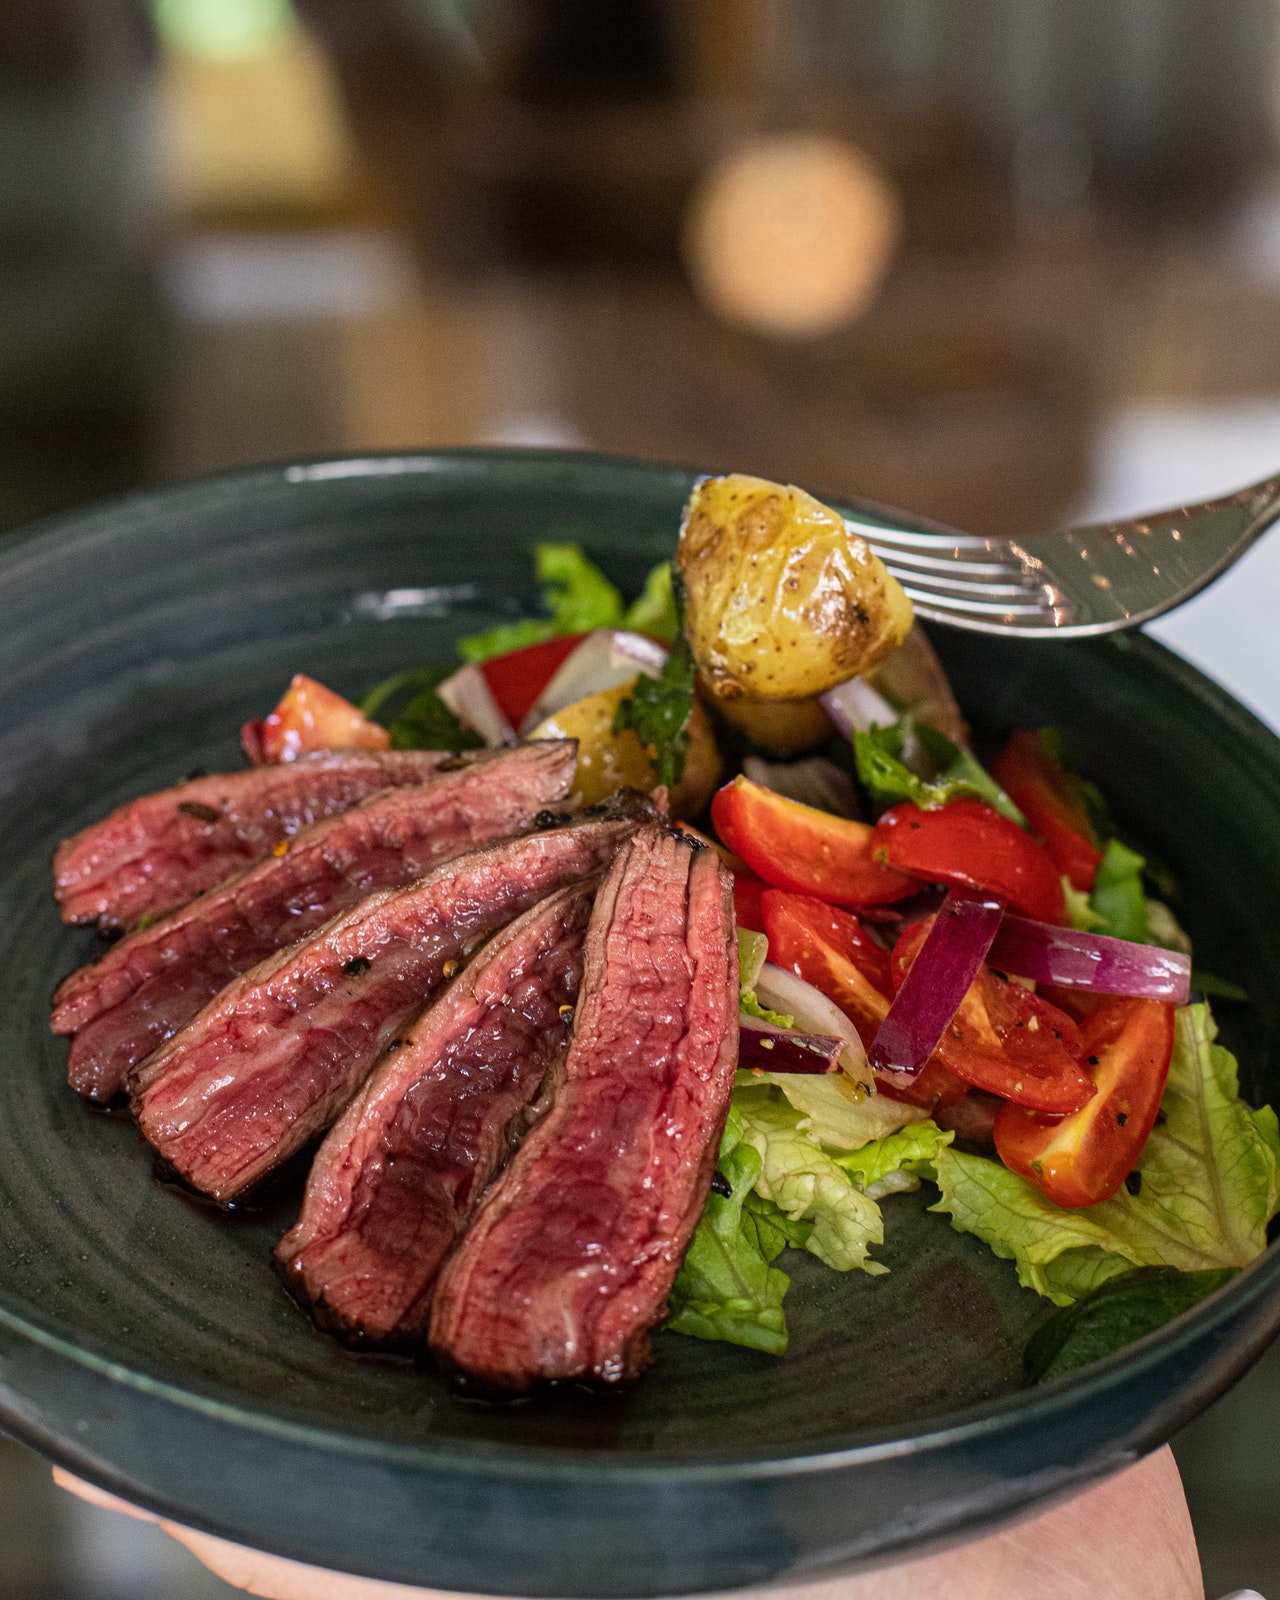 Dĩa thịt bò và salad thực phẩm tăng cân